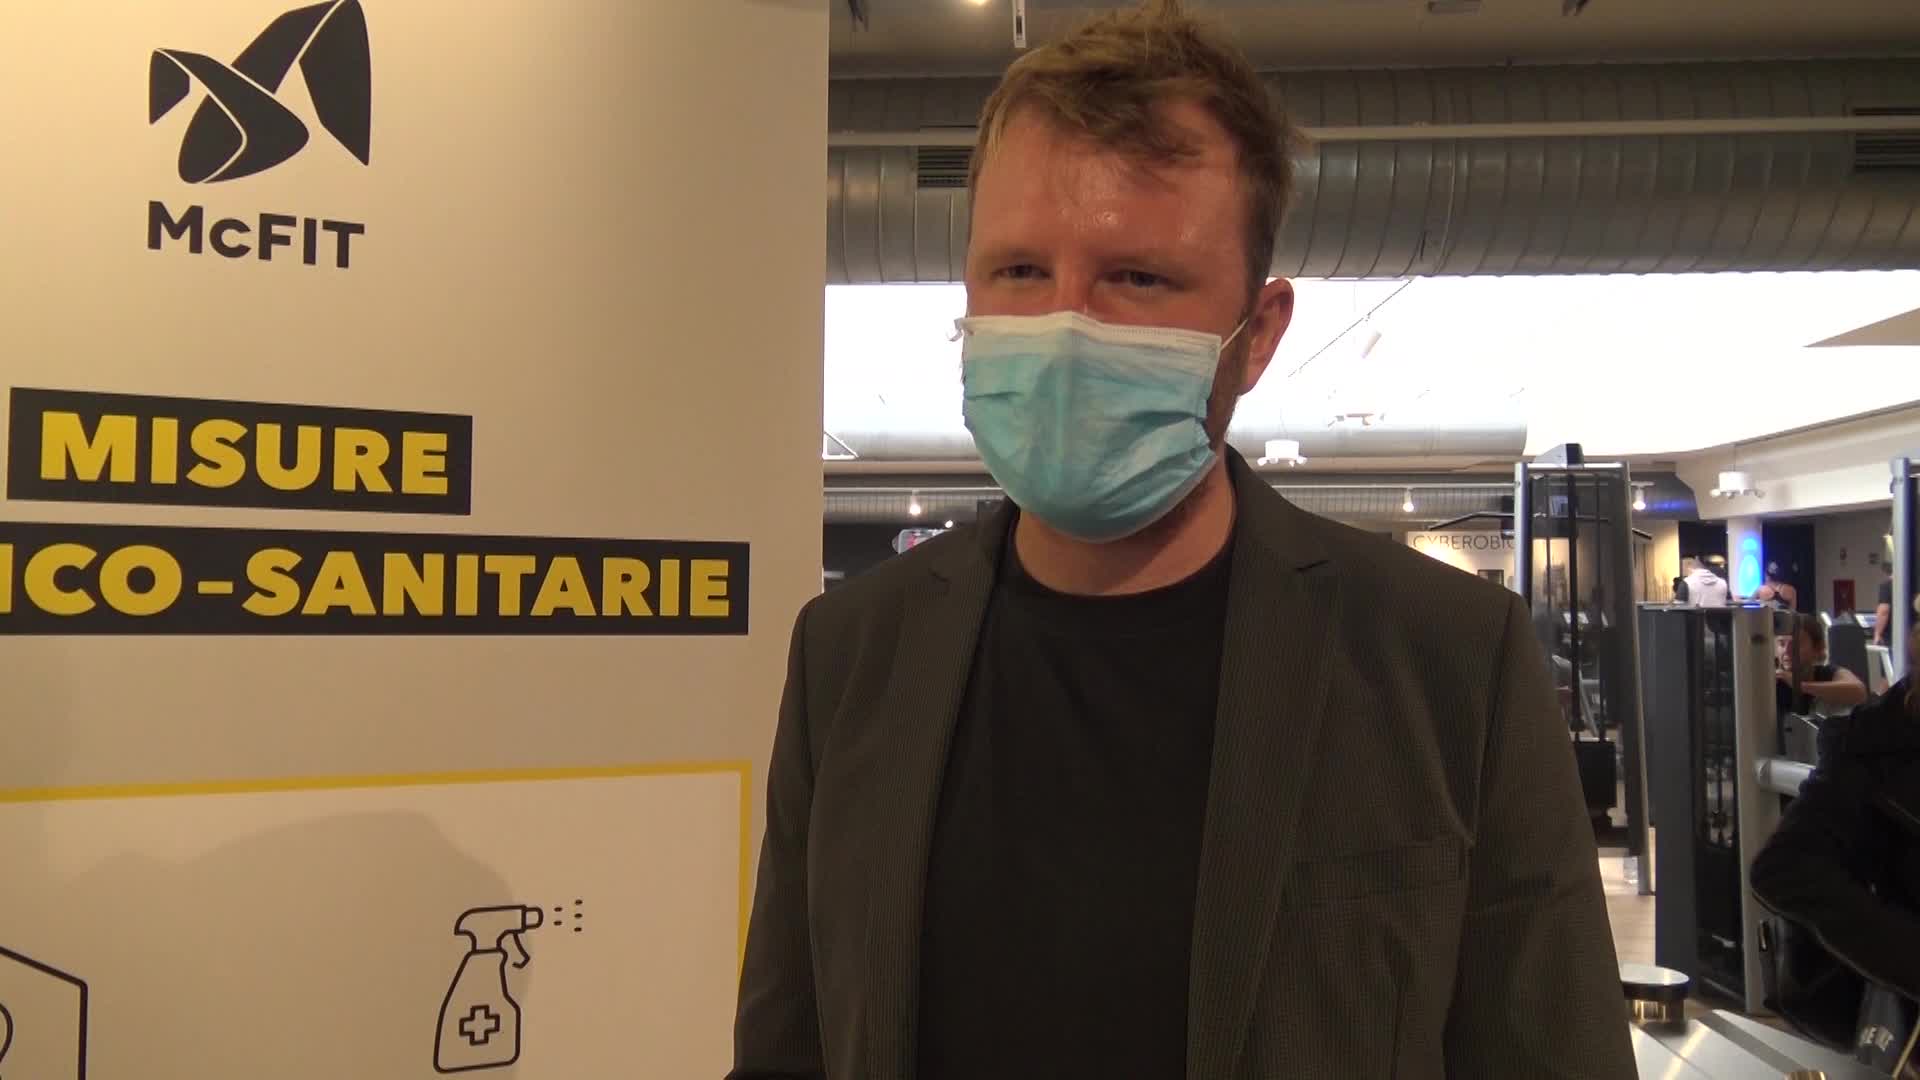 Coronavirus, palestre McFIT Italia: "Non vedeteci come una minaccia, siamo posti sicuri"